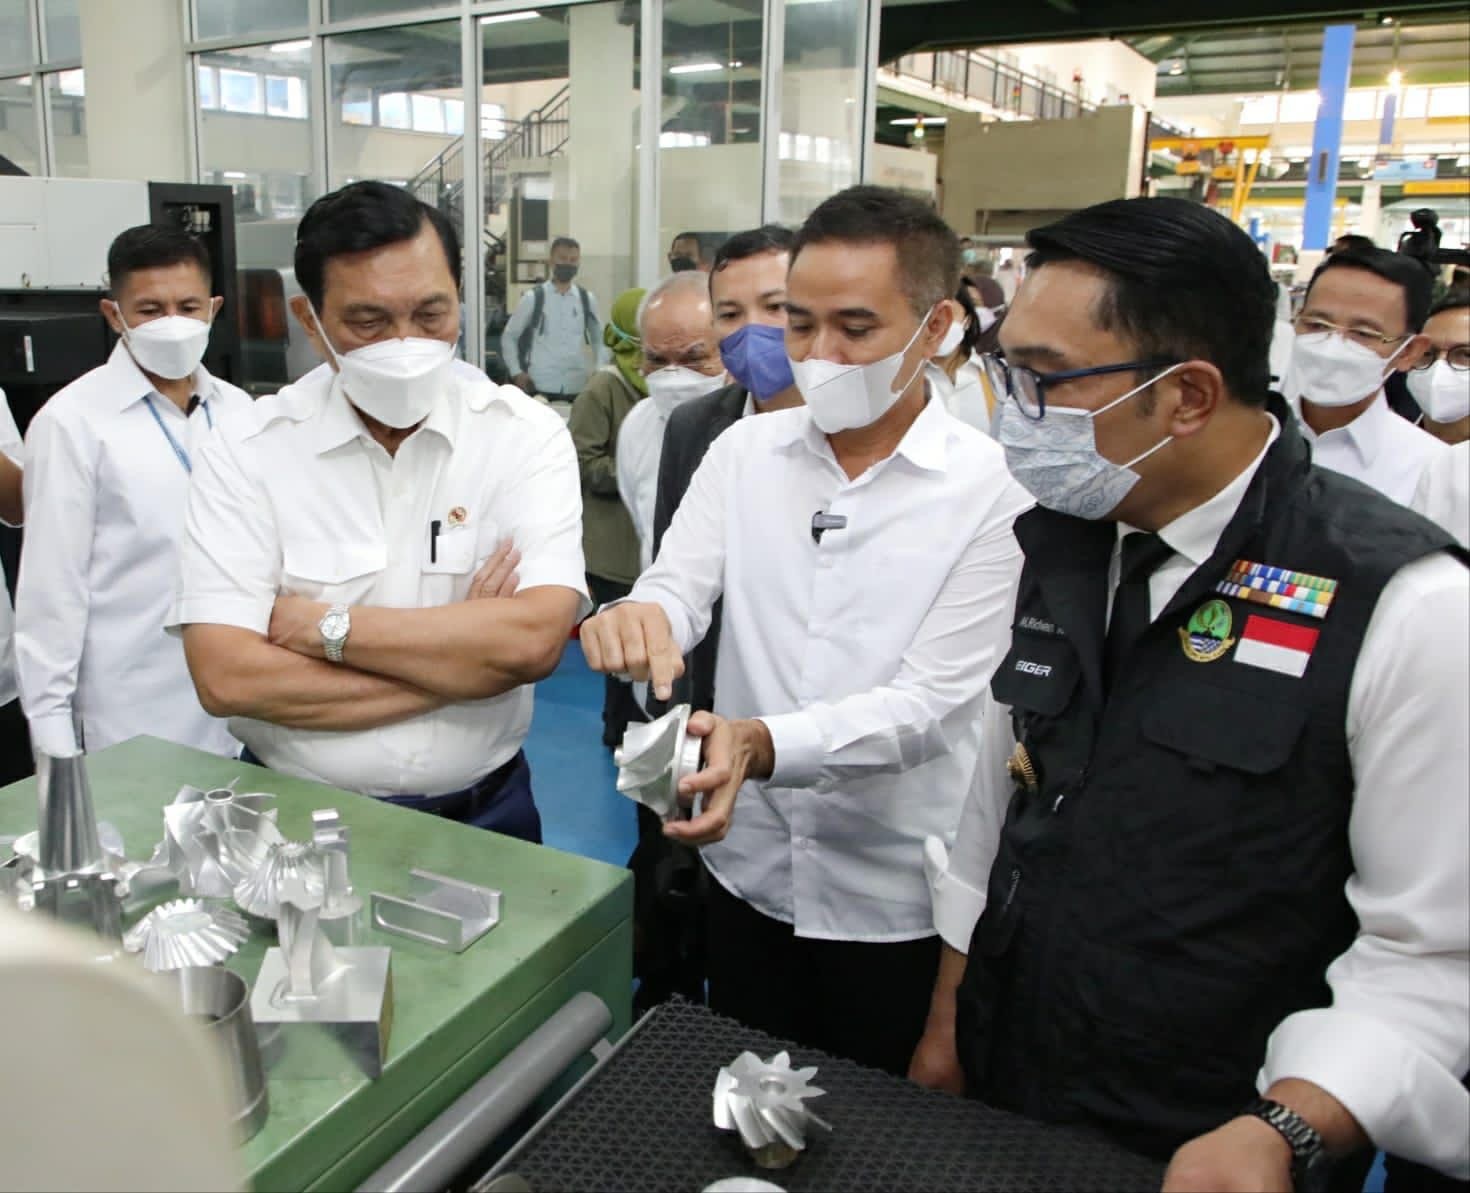 Kualitas SDM Masih Rendah, Luhut Sebut Inovasi Indonesia Relatif Tertinggal. (Foto: MNC Media)